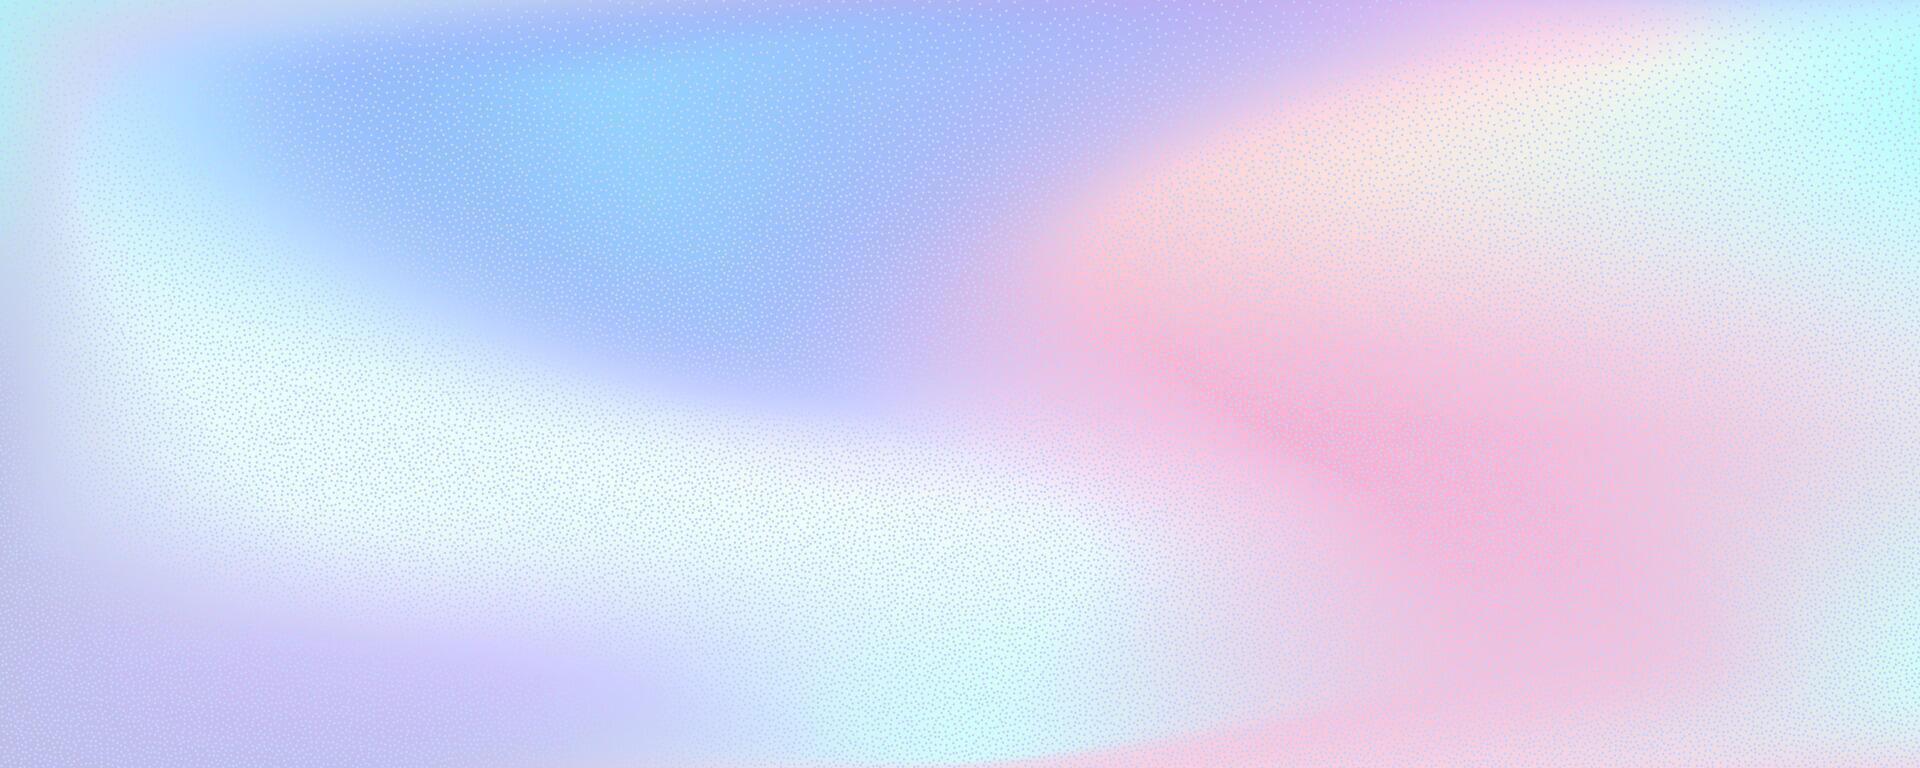 kleurrijk helling achtergrond met lawaai effect. vector